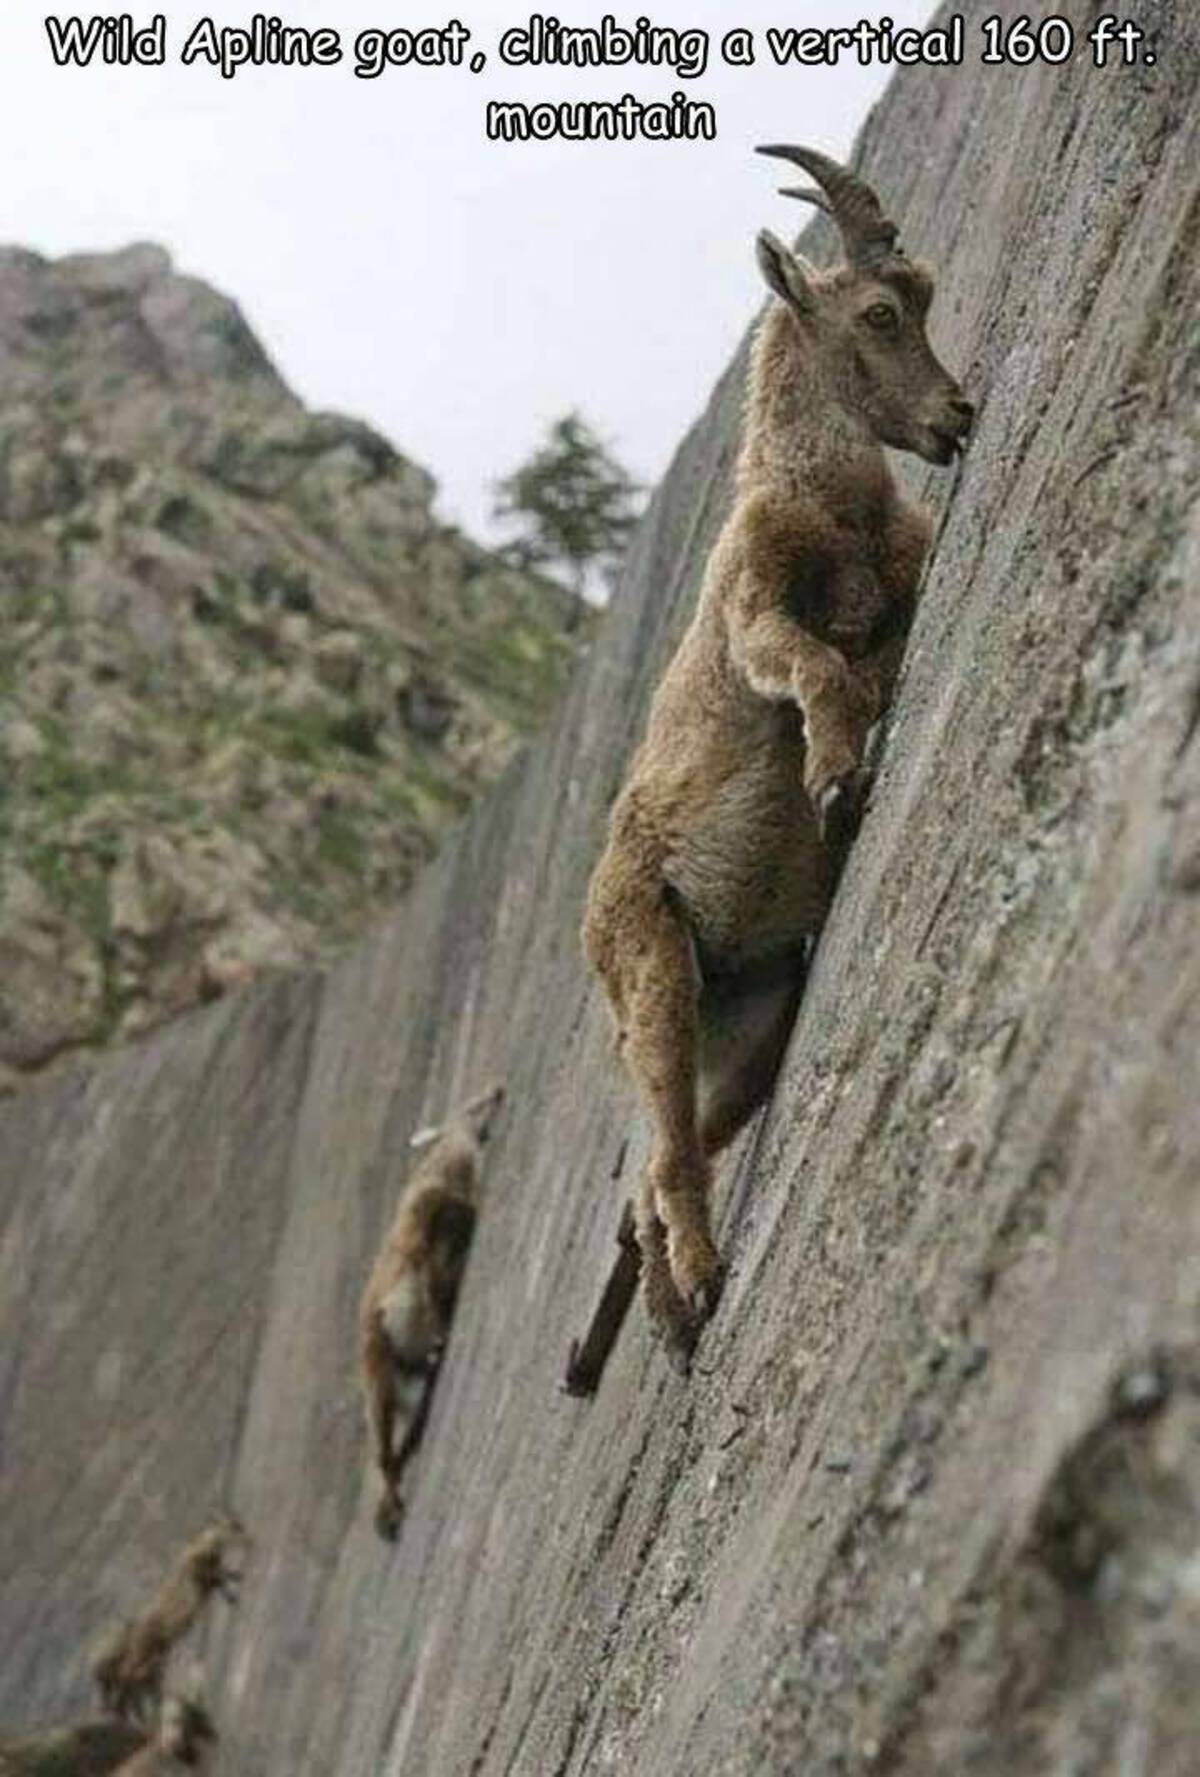 goats on walls - Wild Apline goat, climbing a vertical 160 ft. mountain